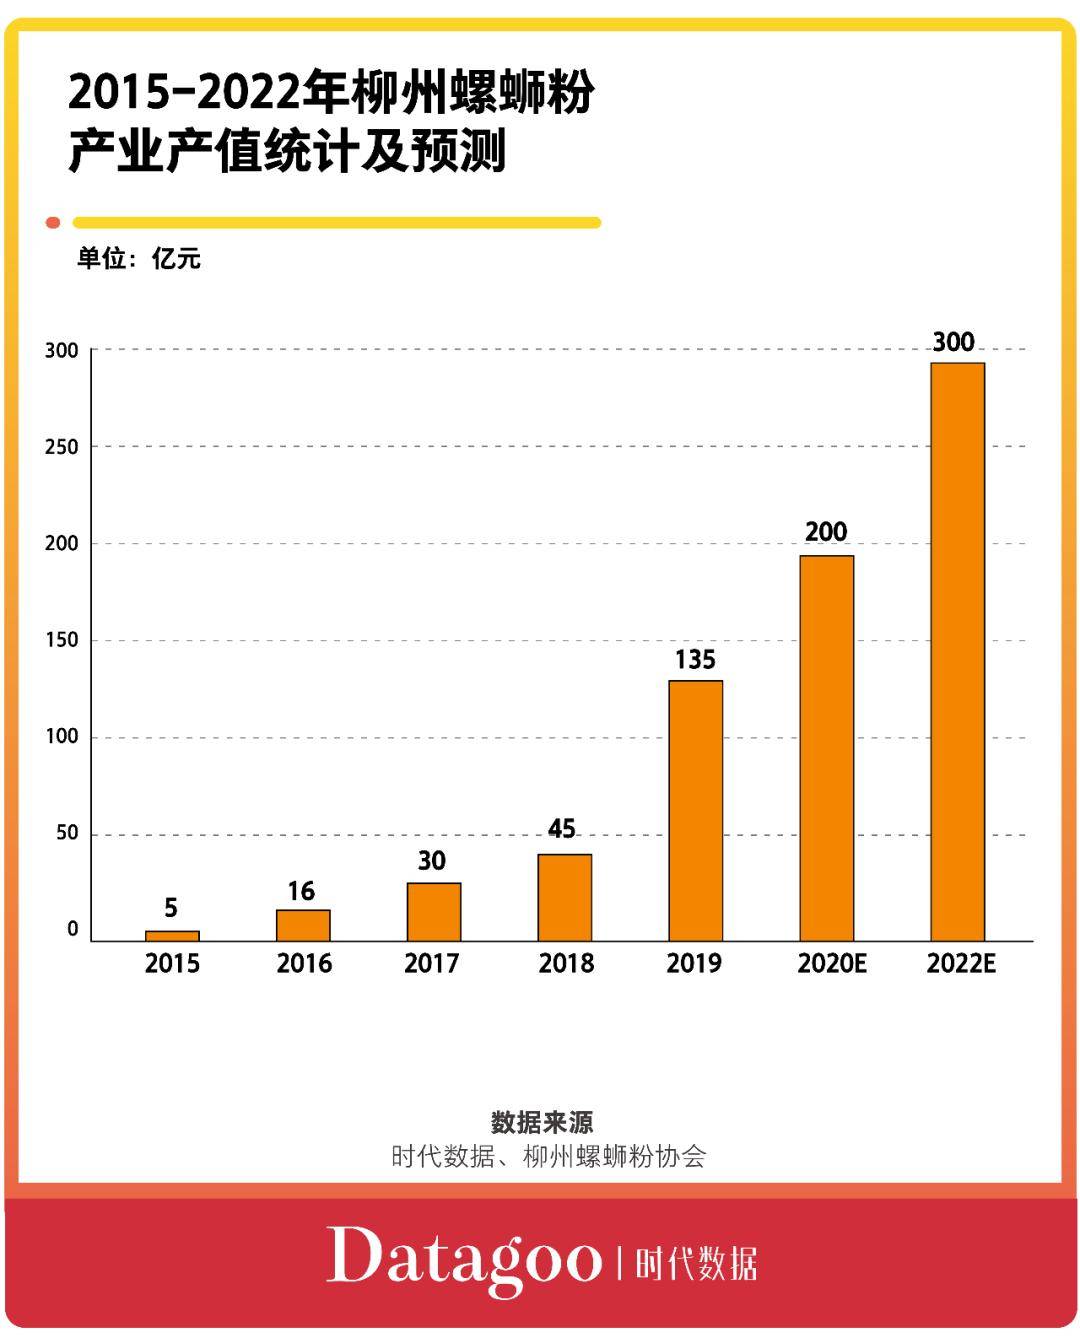 据柳州螺蛳粉协会的统计数据显示,2019年,柳州螺蛳粉产业产值突破百亿